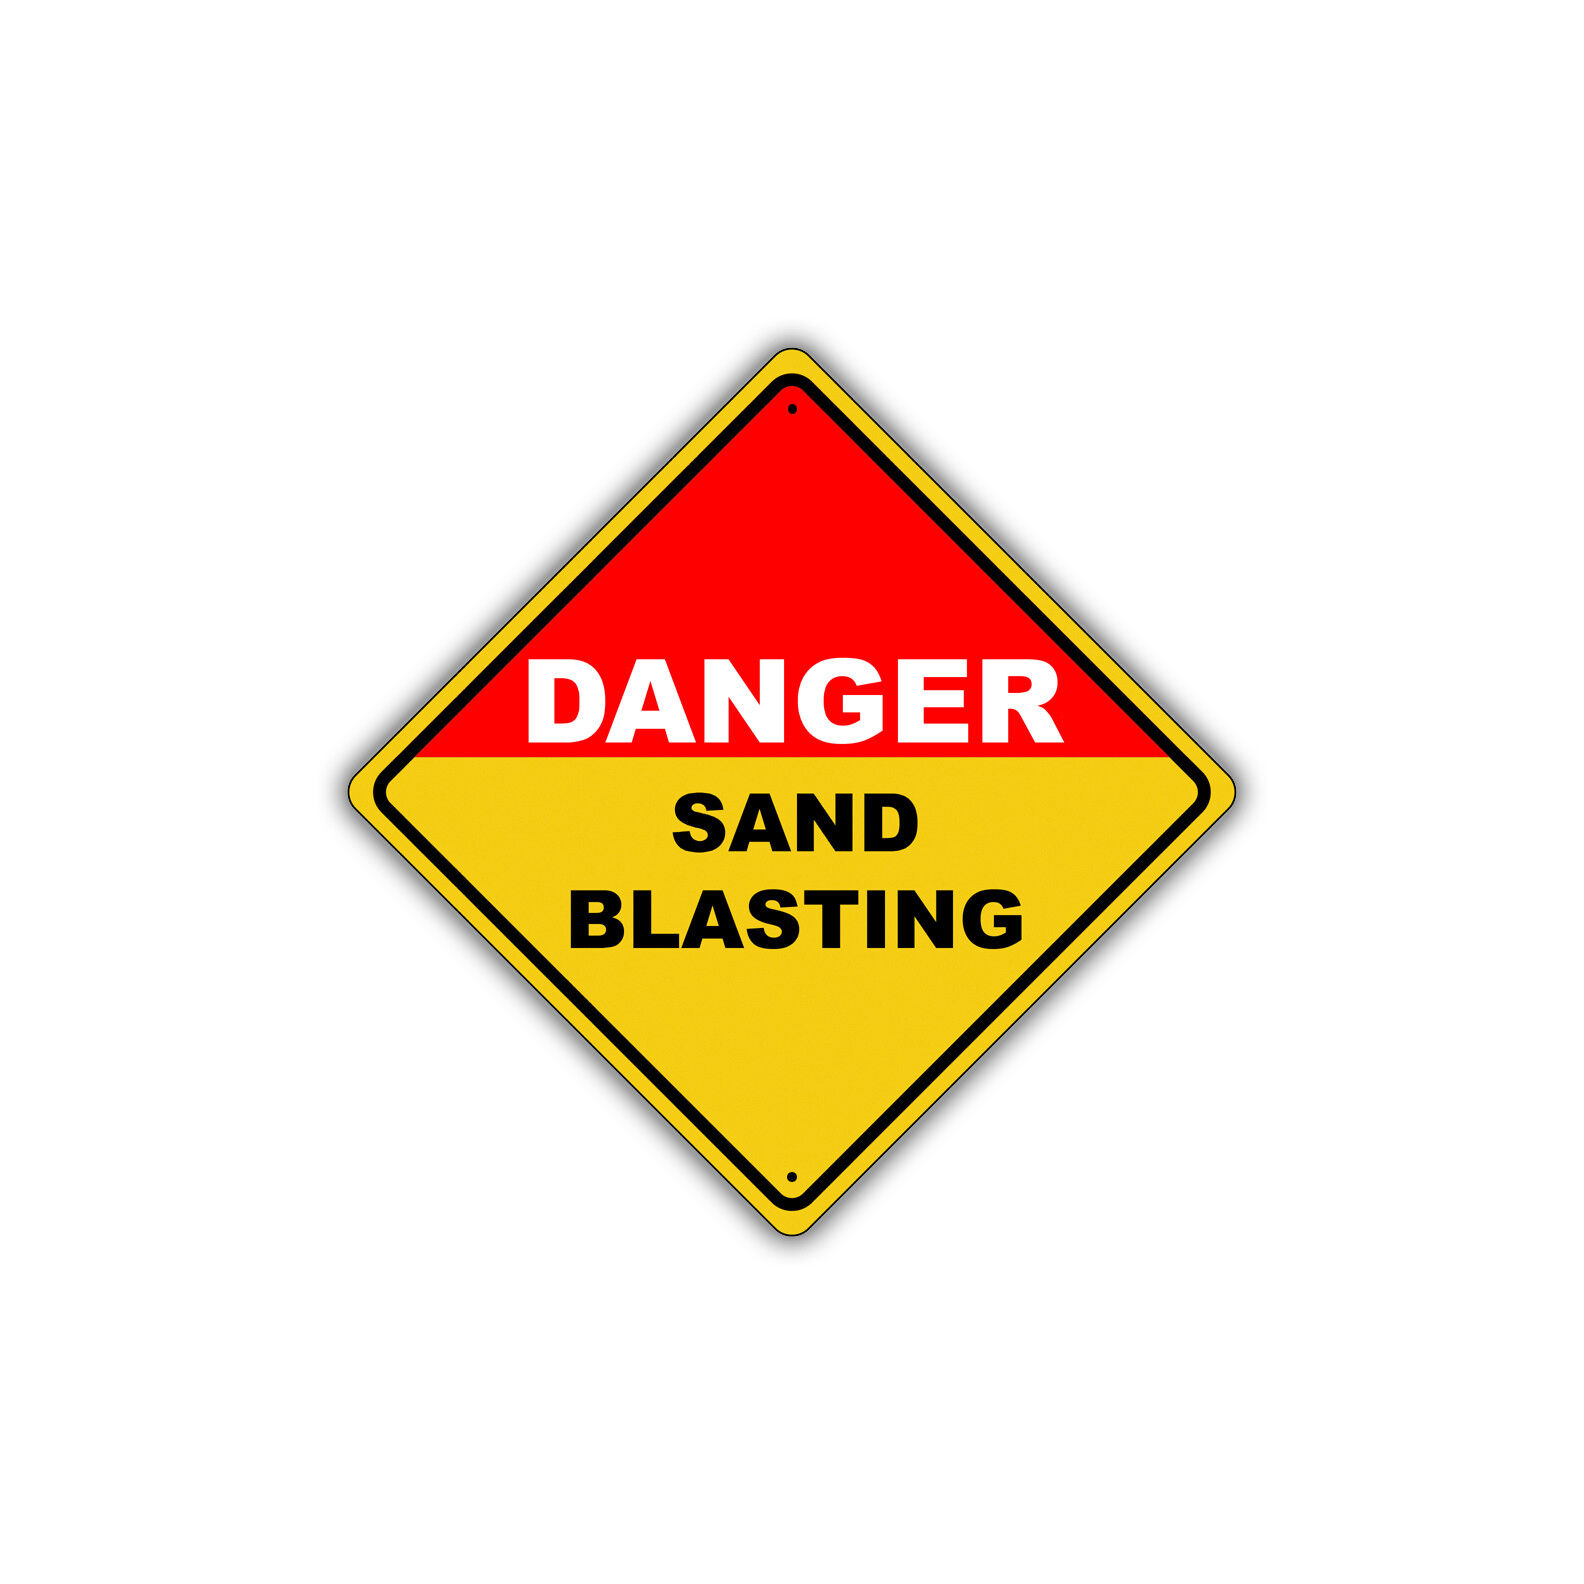 Danger Sand Blasting Diamond Sign Caution Notice Aluminum Metal Sign 12x12